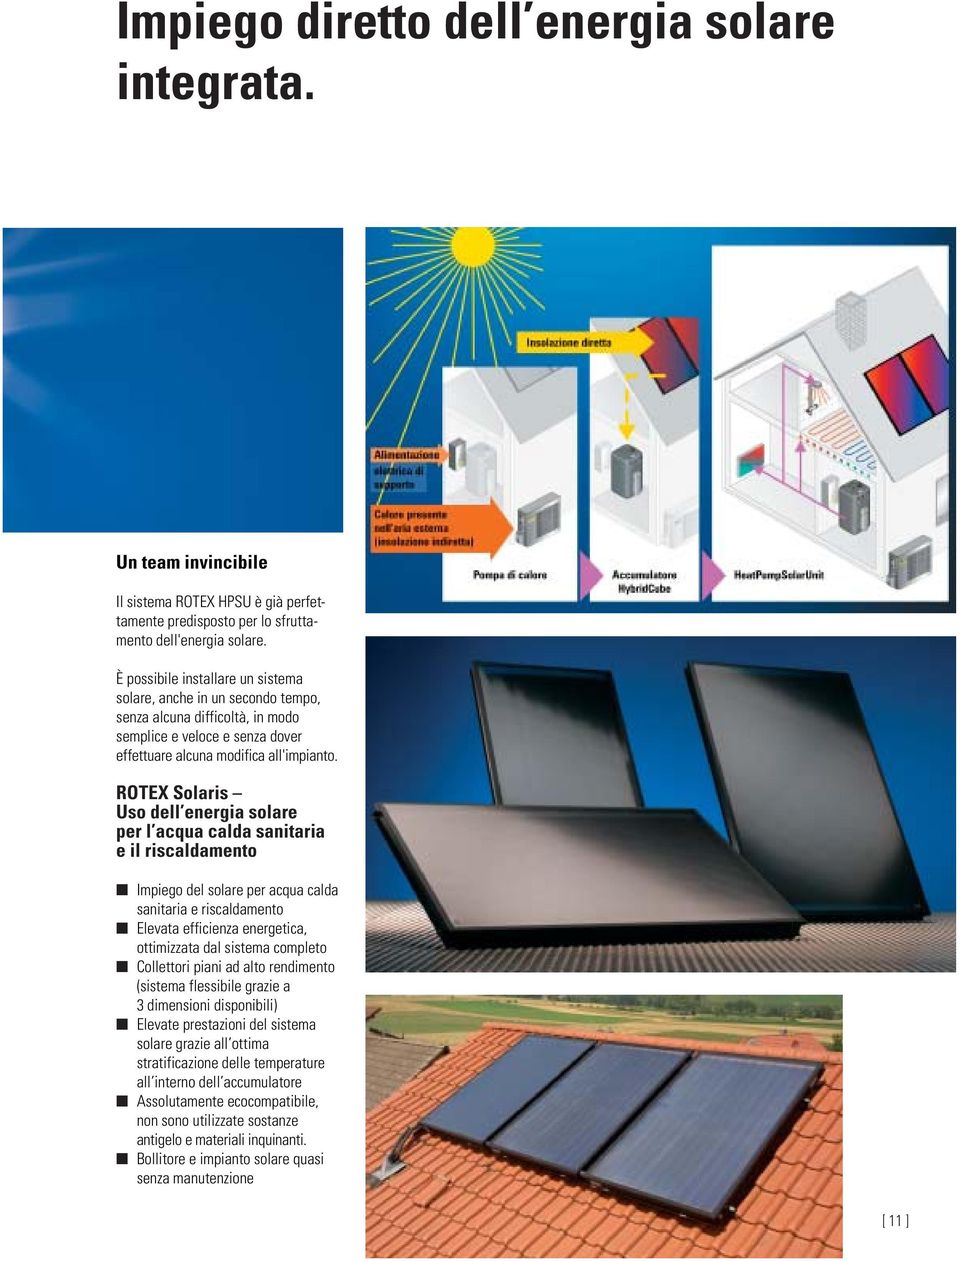 ROTEX Solaris Uso dell energia solare per l acqua calda sanitaria e il riscaldamento Impiego del solare per acqua calda sanitaria e riscaldamento Elevata efficienza energetica, ottimizzata dal